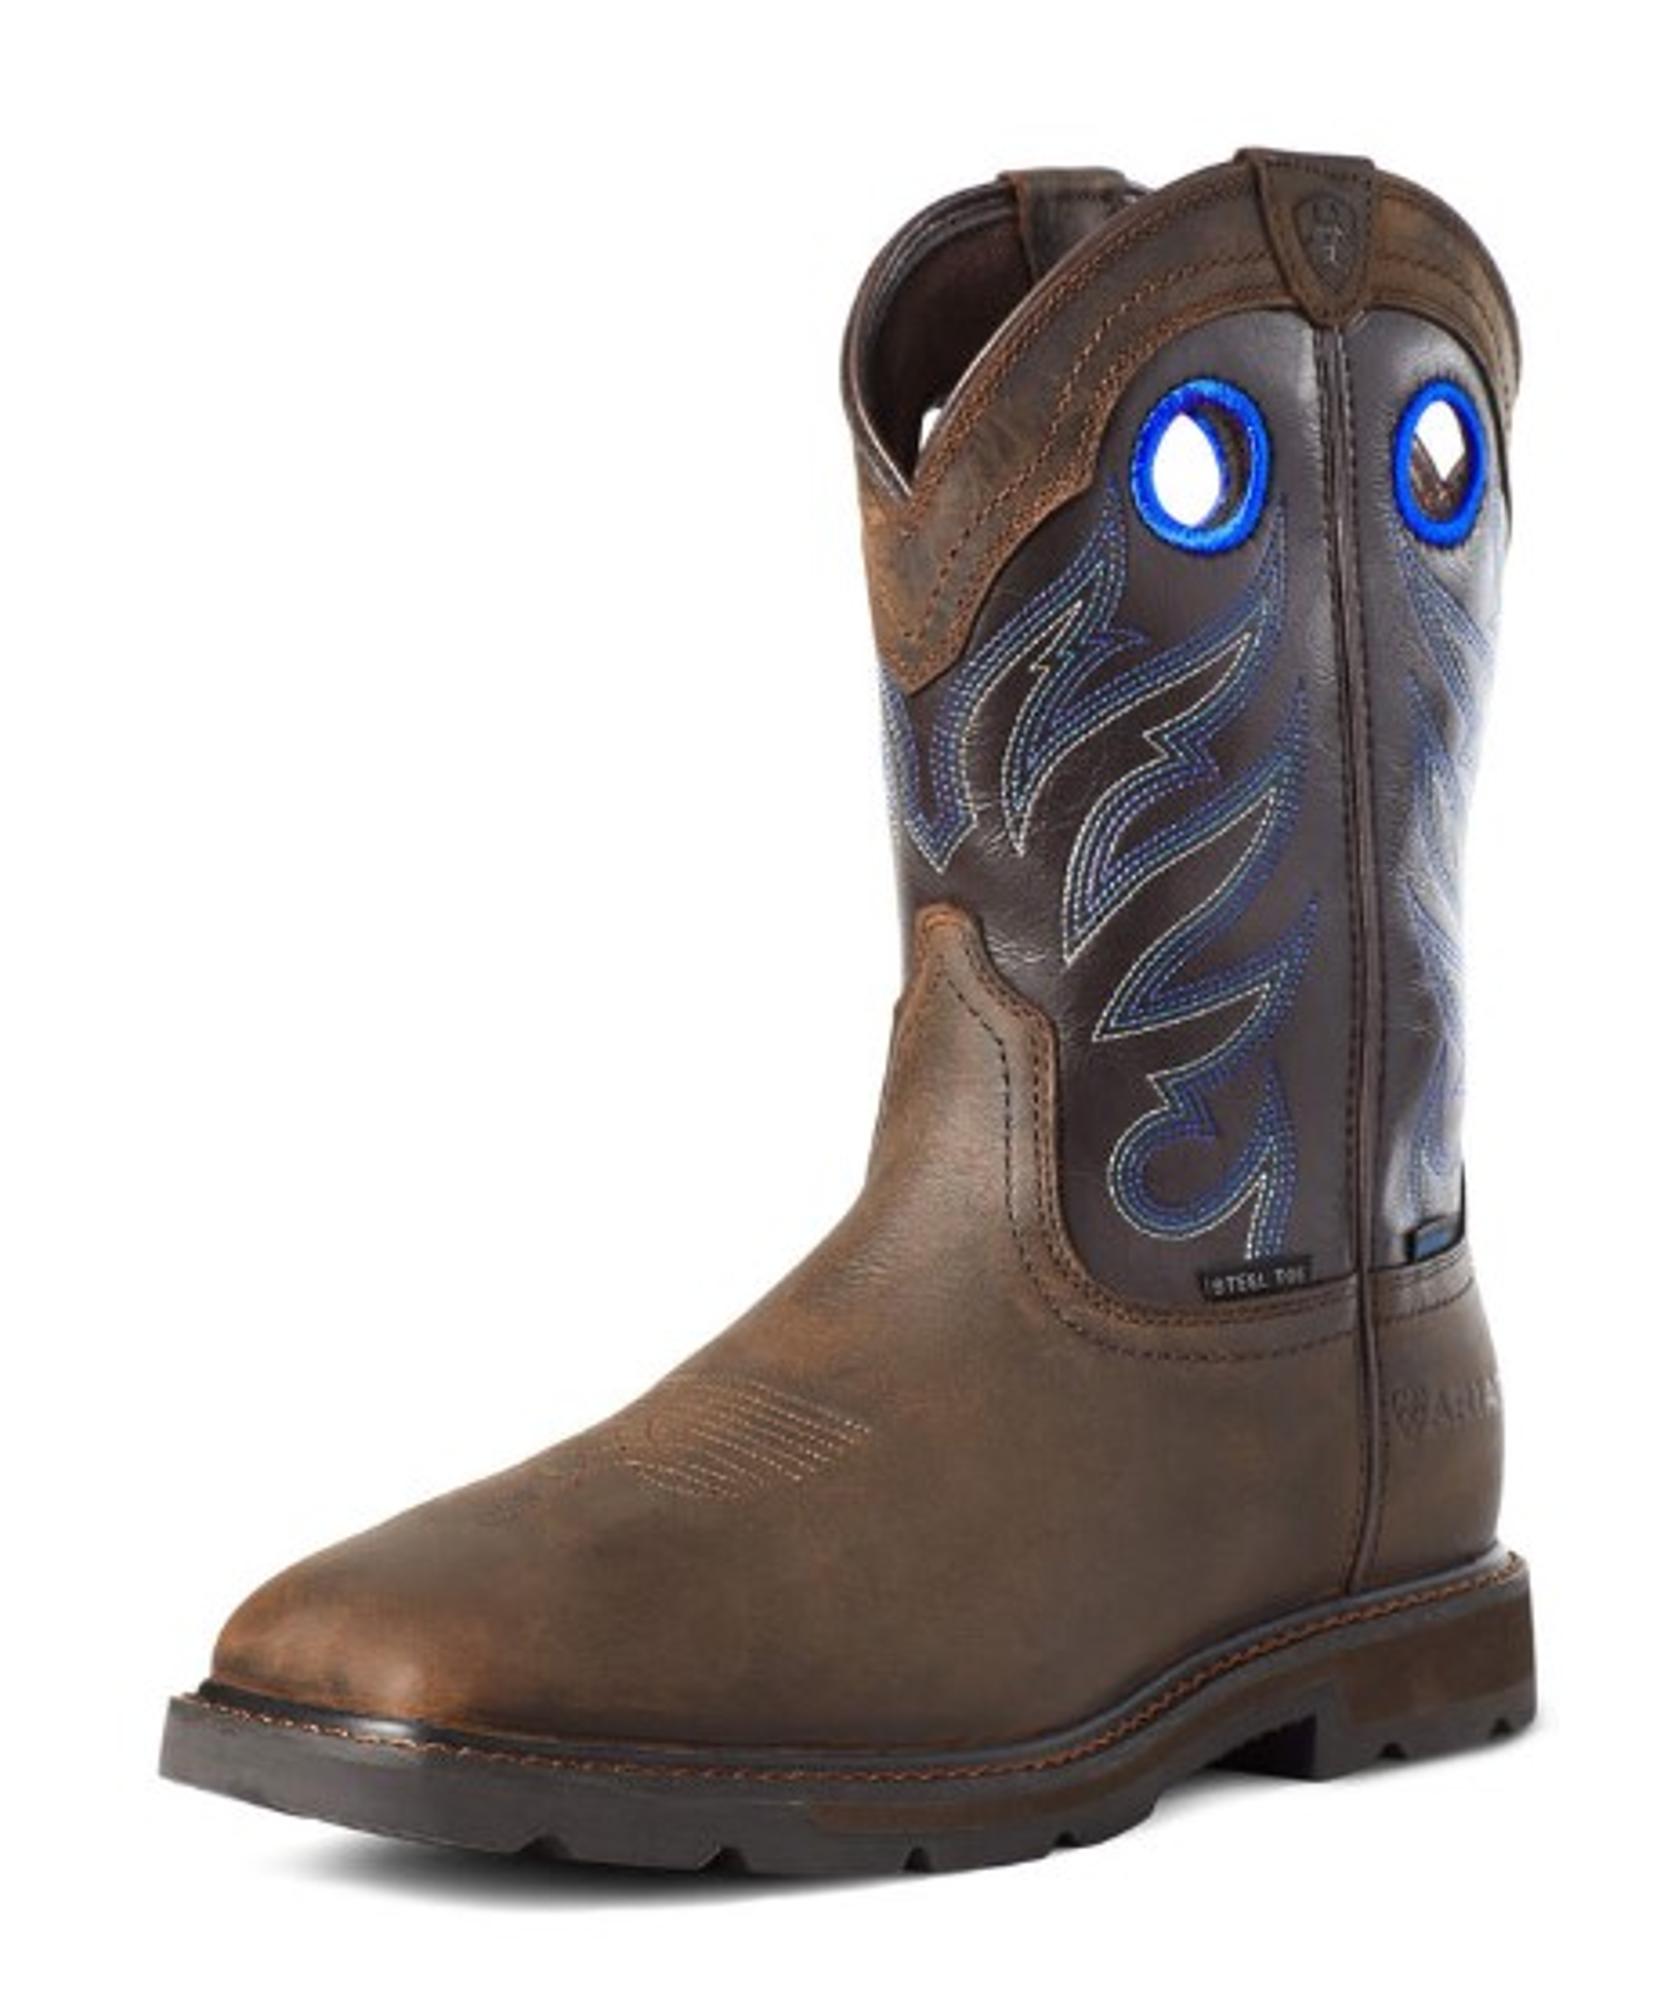 Groundwork Waterproof Steel Toe Work Boots